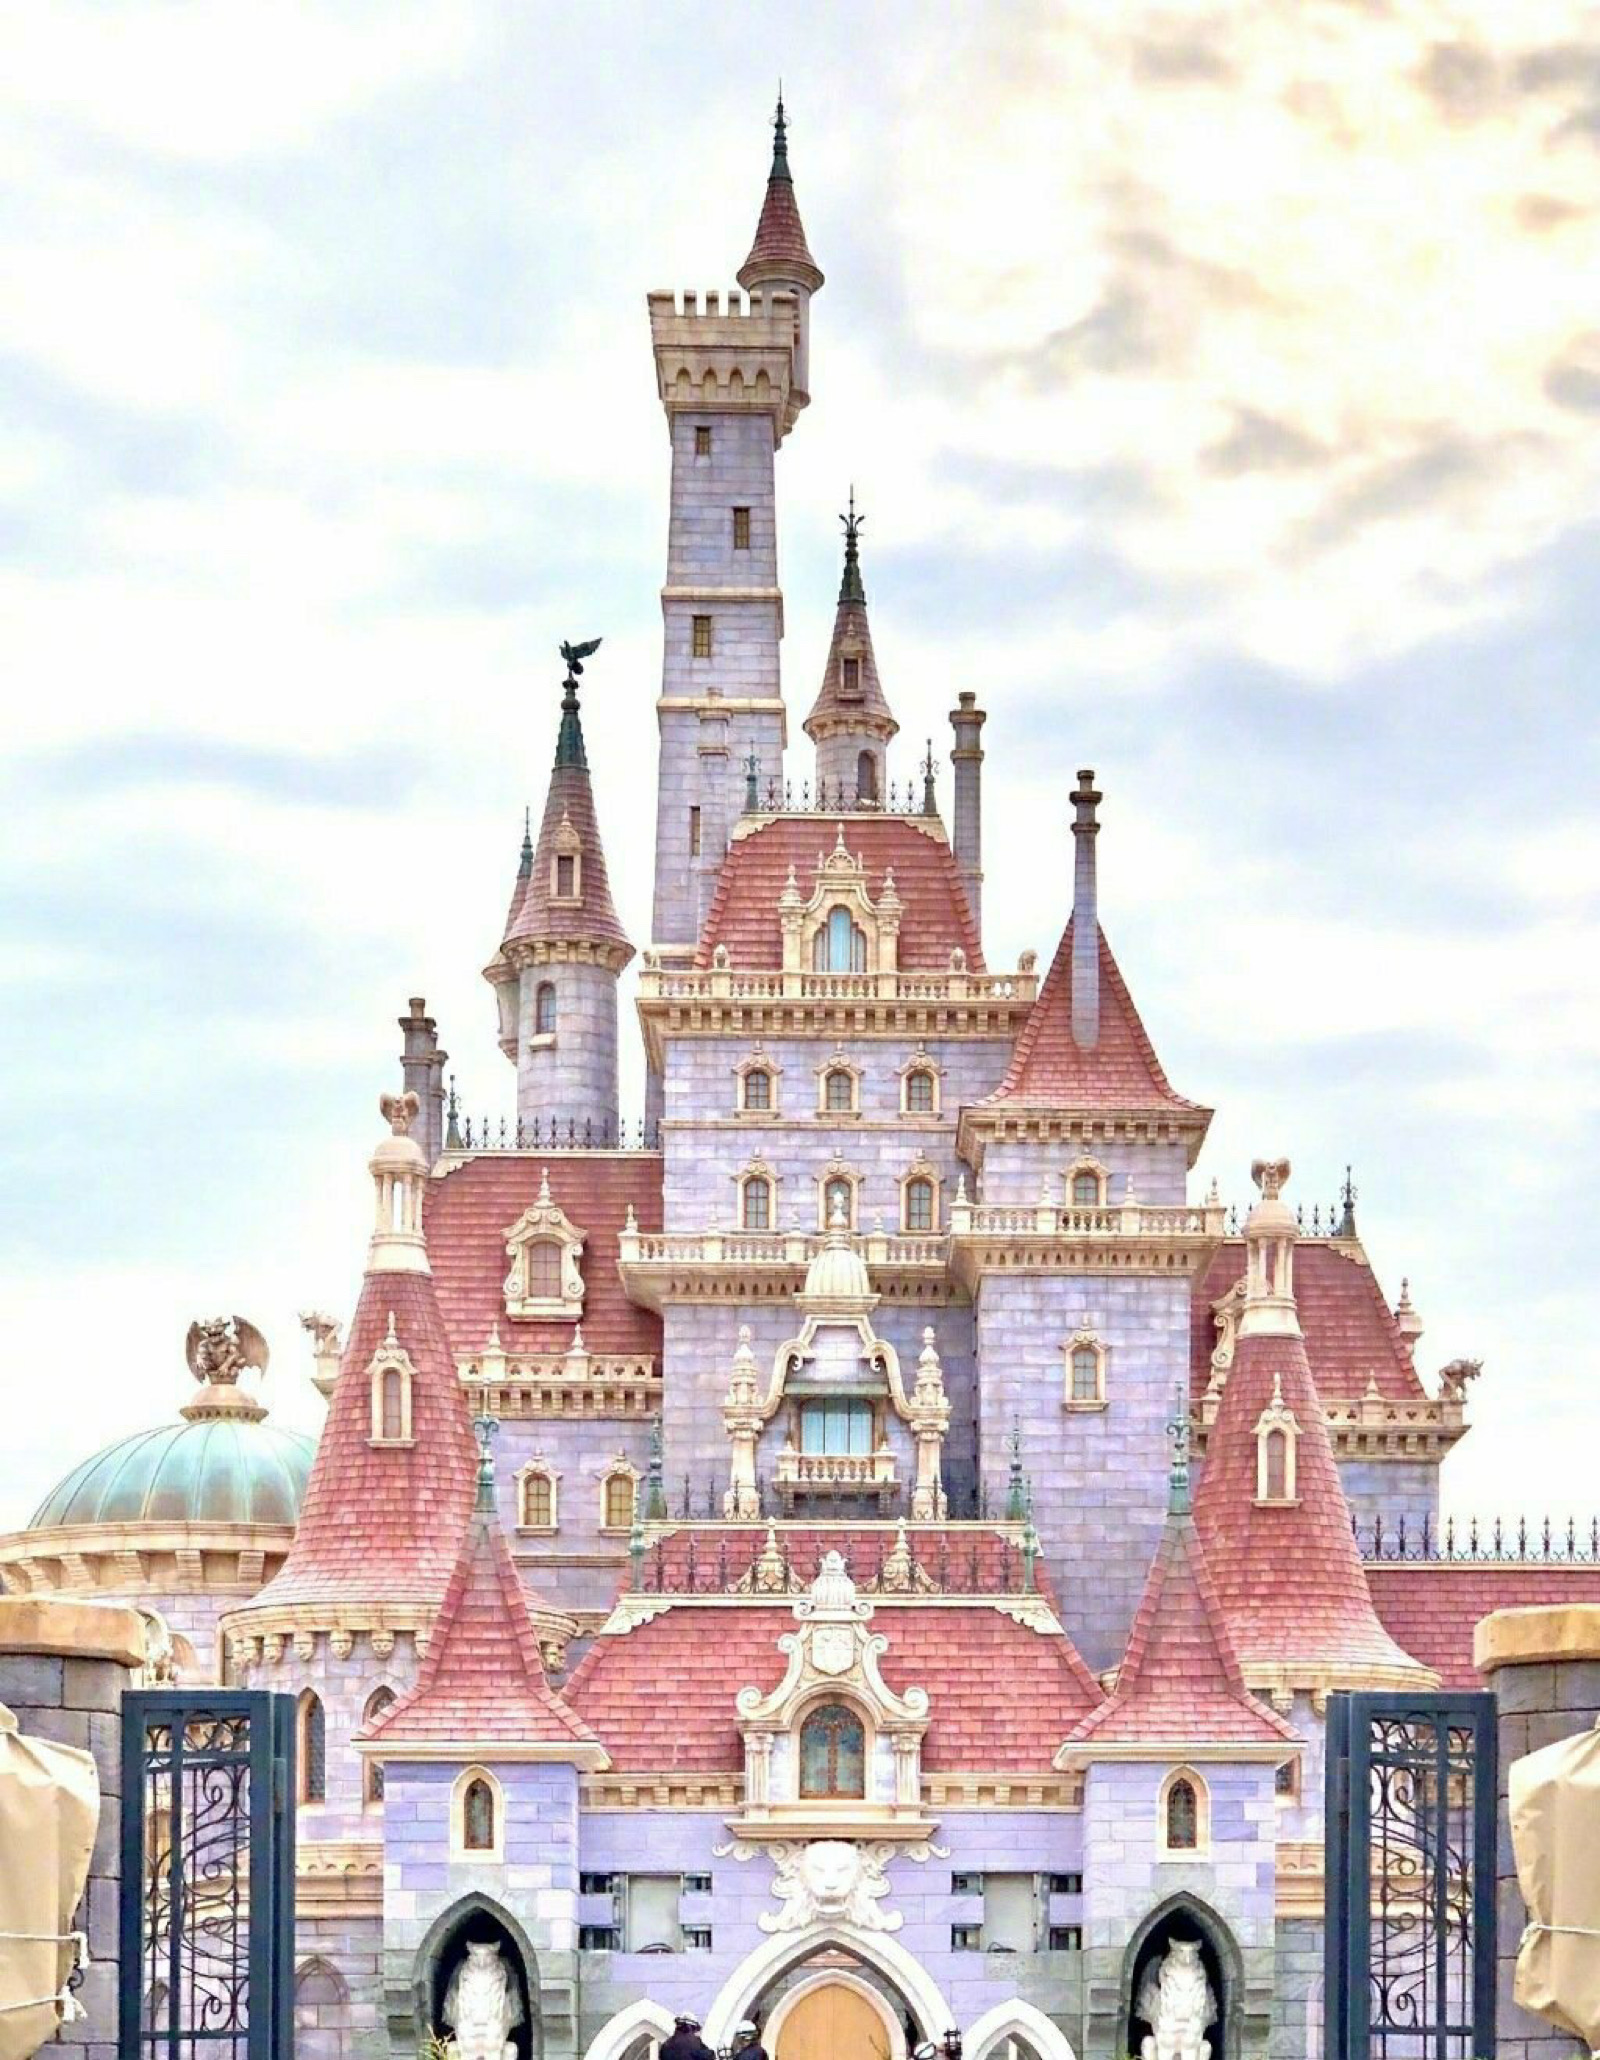 迪士尼城堡·迪士尼背景图·壁纸 - 堆糖，美图壁纸兴趣社区